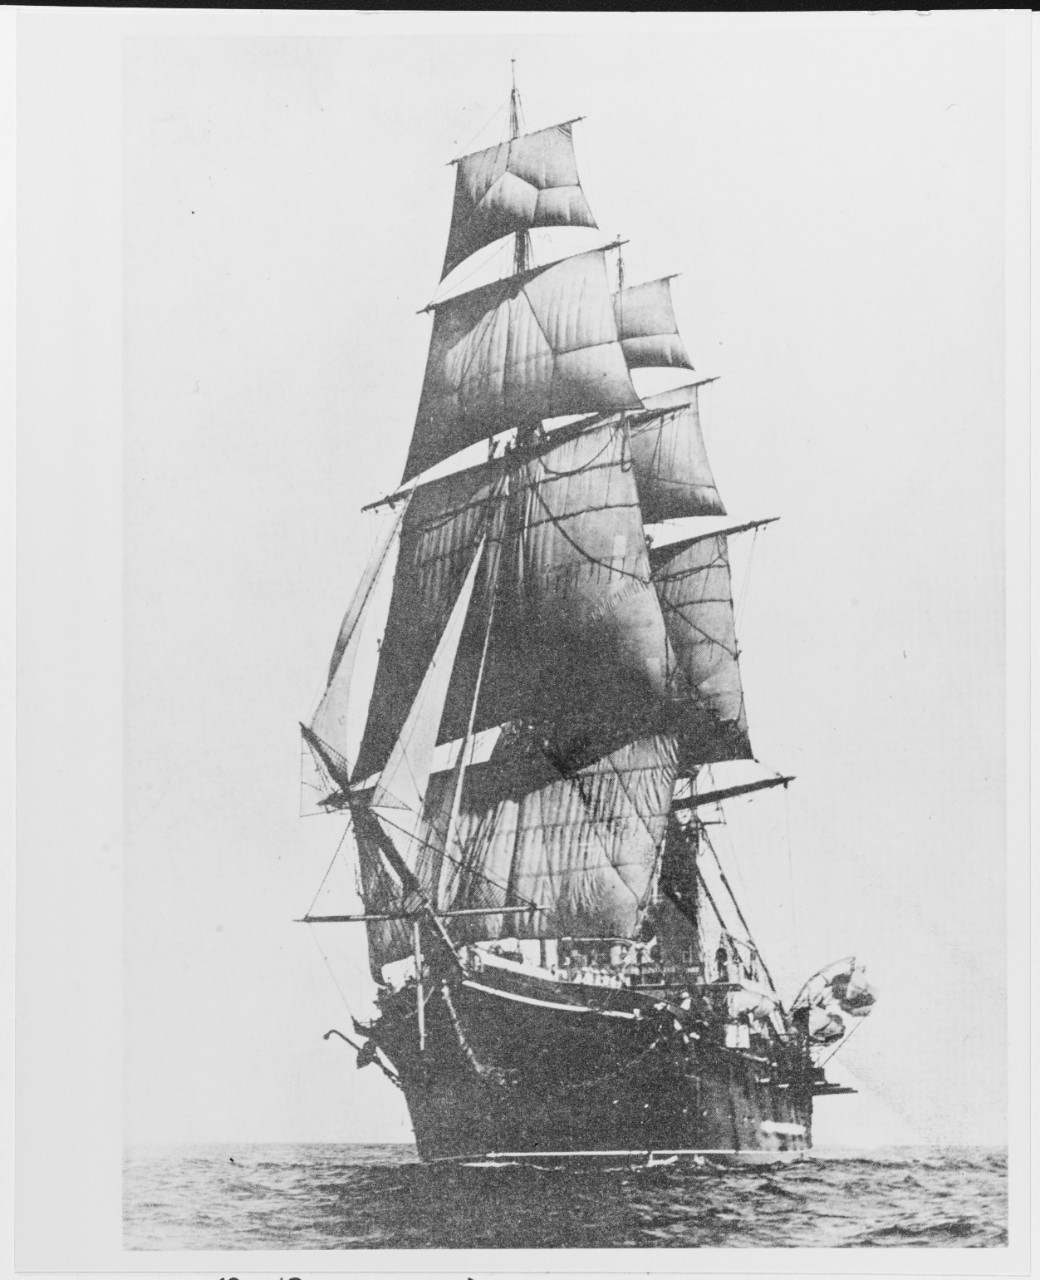 USS HARTFORD (1859-1956)